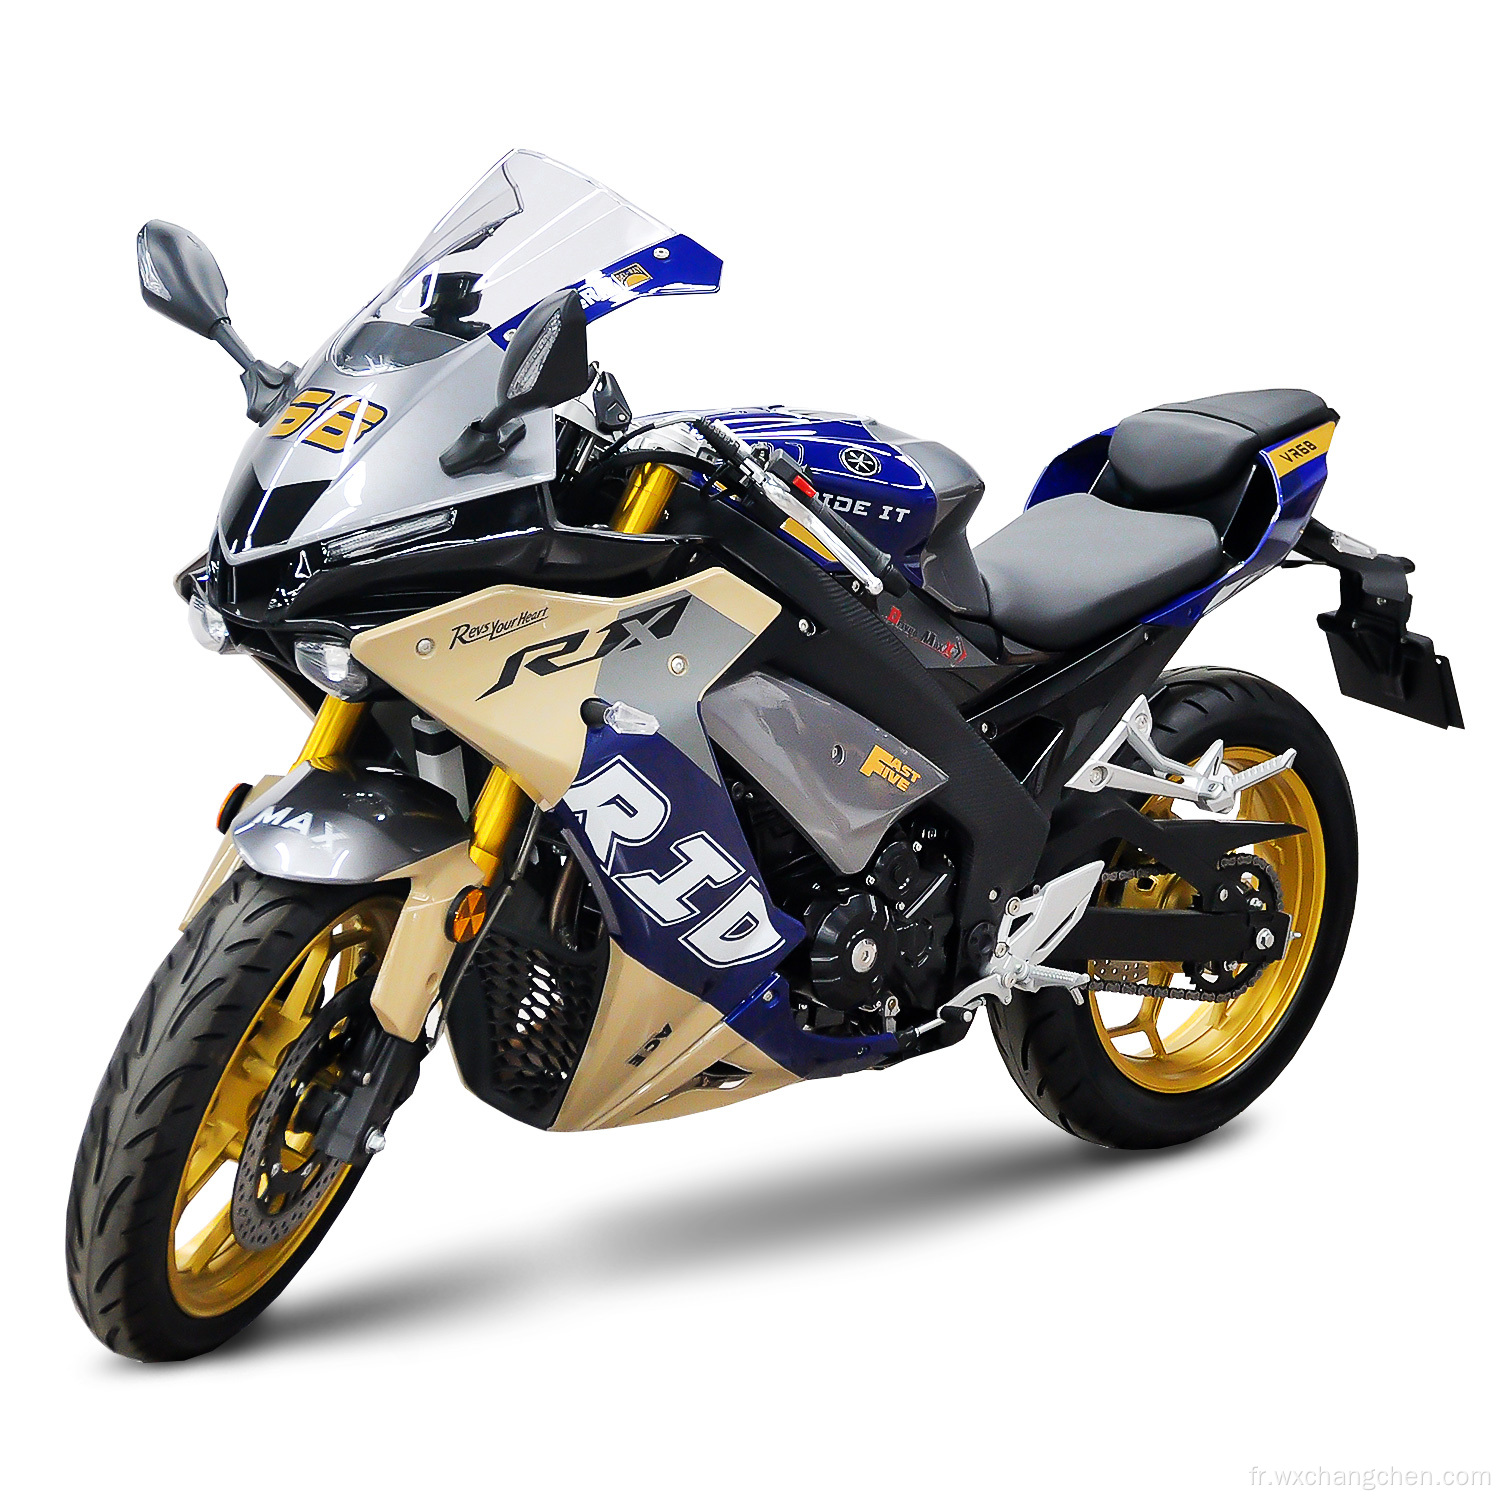 Ventes directes Nouveaux modèles Motorcycles Gesoline Engine Sport Dirt Bike 250cc